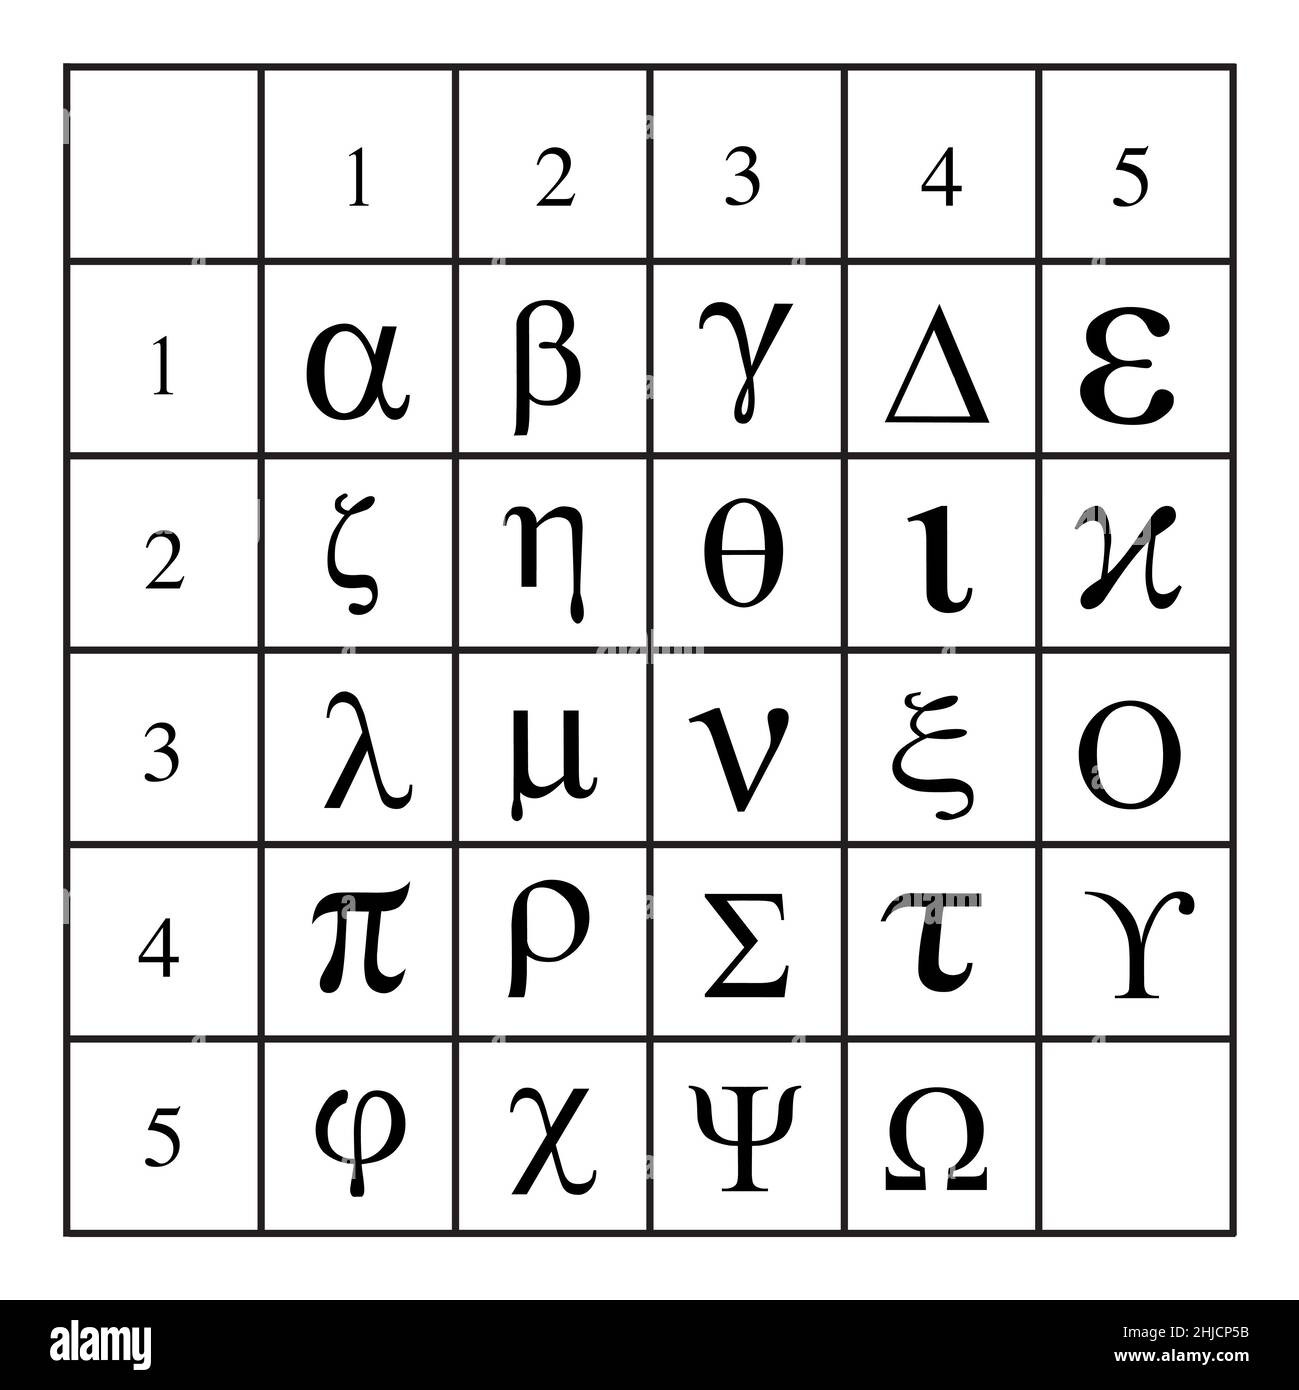 Les tablettes et les carrés Polybius ont été utilisés à l'origine dans la Grèce antique pour transmettre des messages par des torches.C'est un système utilisé pour le chiffrement et la télégraphie.Il fonctionne en remplaçant chaque lettre de l'alphabet ht par un nombre à deux chiffres. Banque D'Images